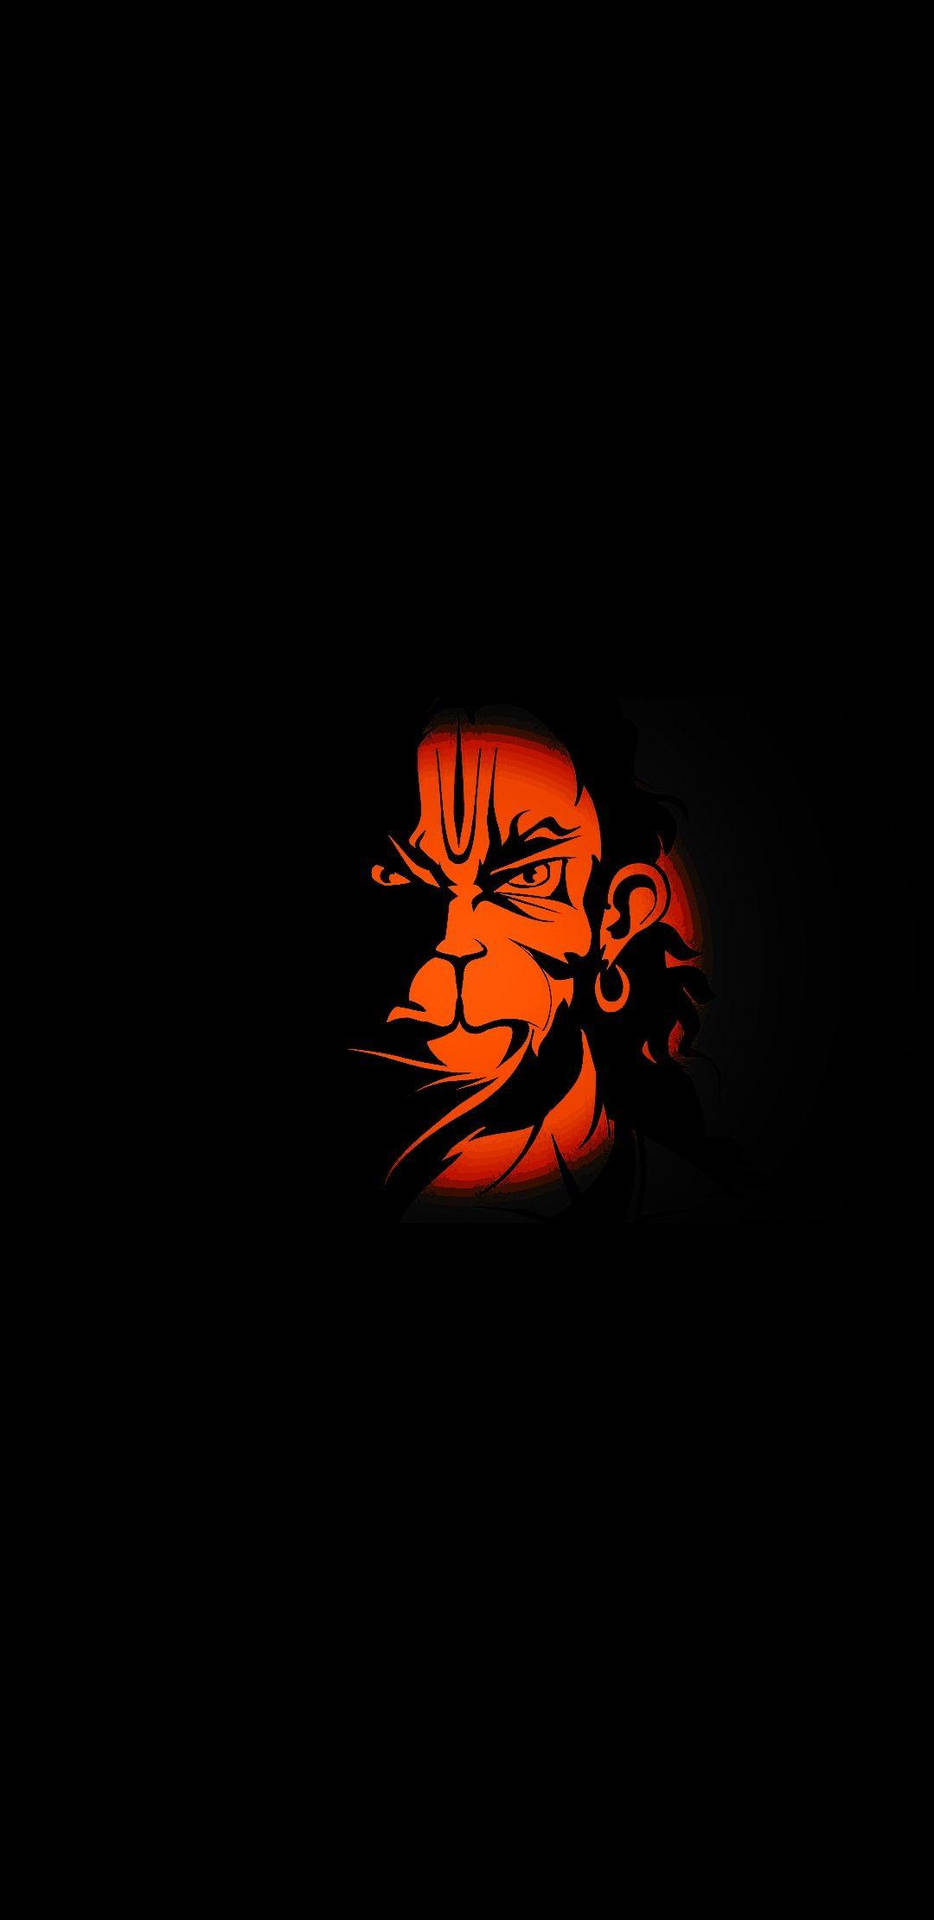 Free Lord Hanuman 3d Wallpaper Downloads 100 Lord Hanuman 3d Wallpapers  for FREE  Wallpaperscom